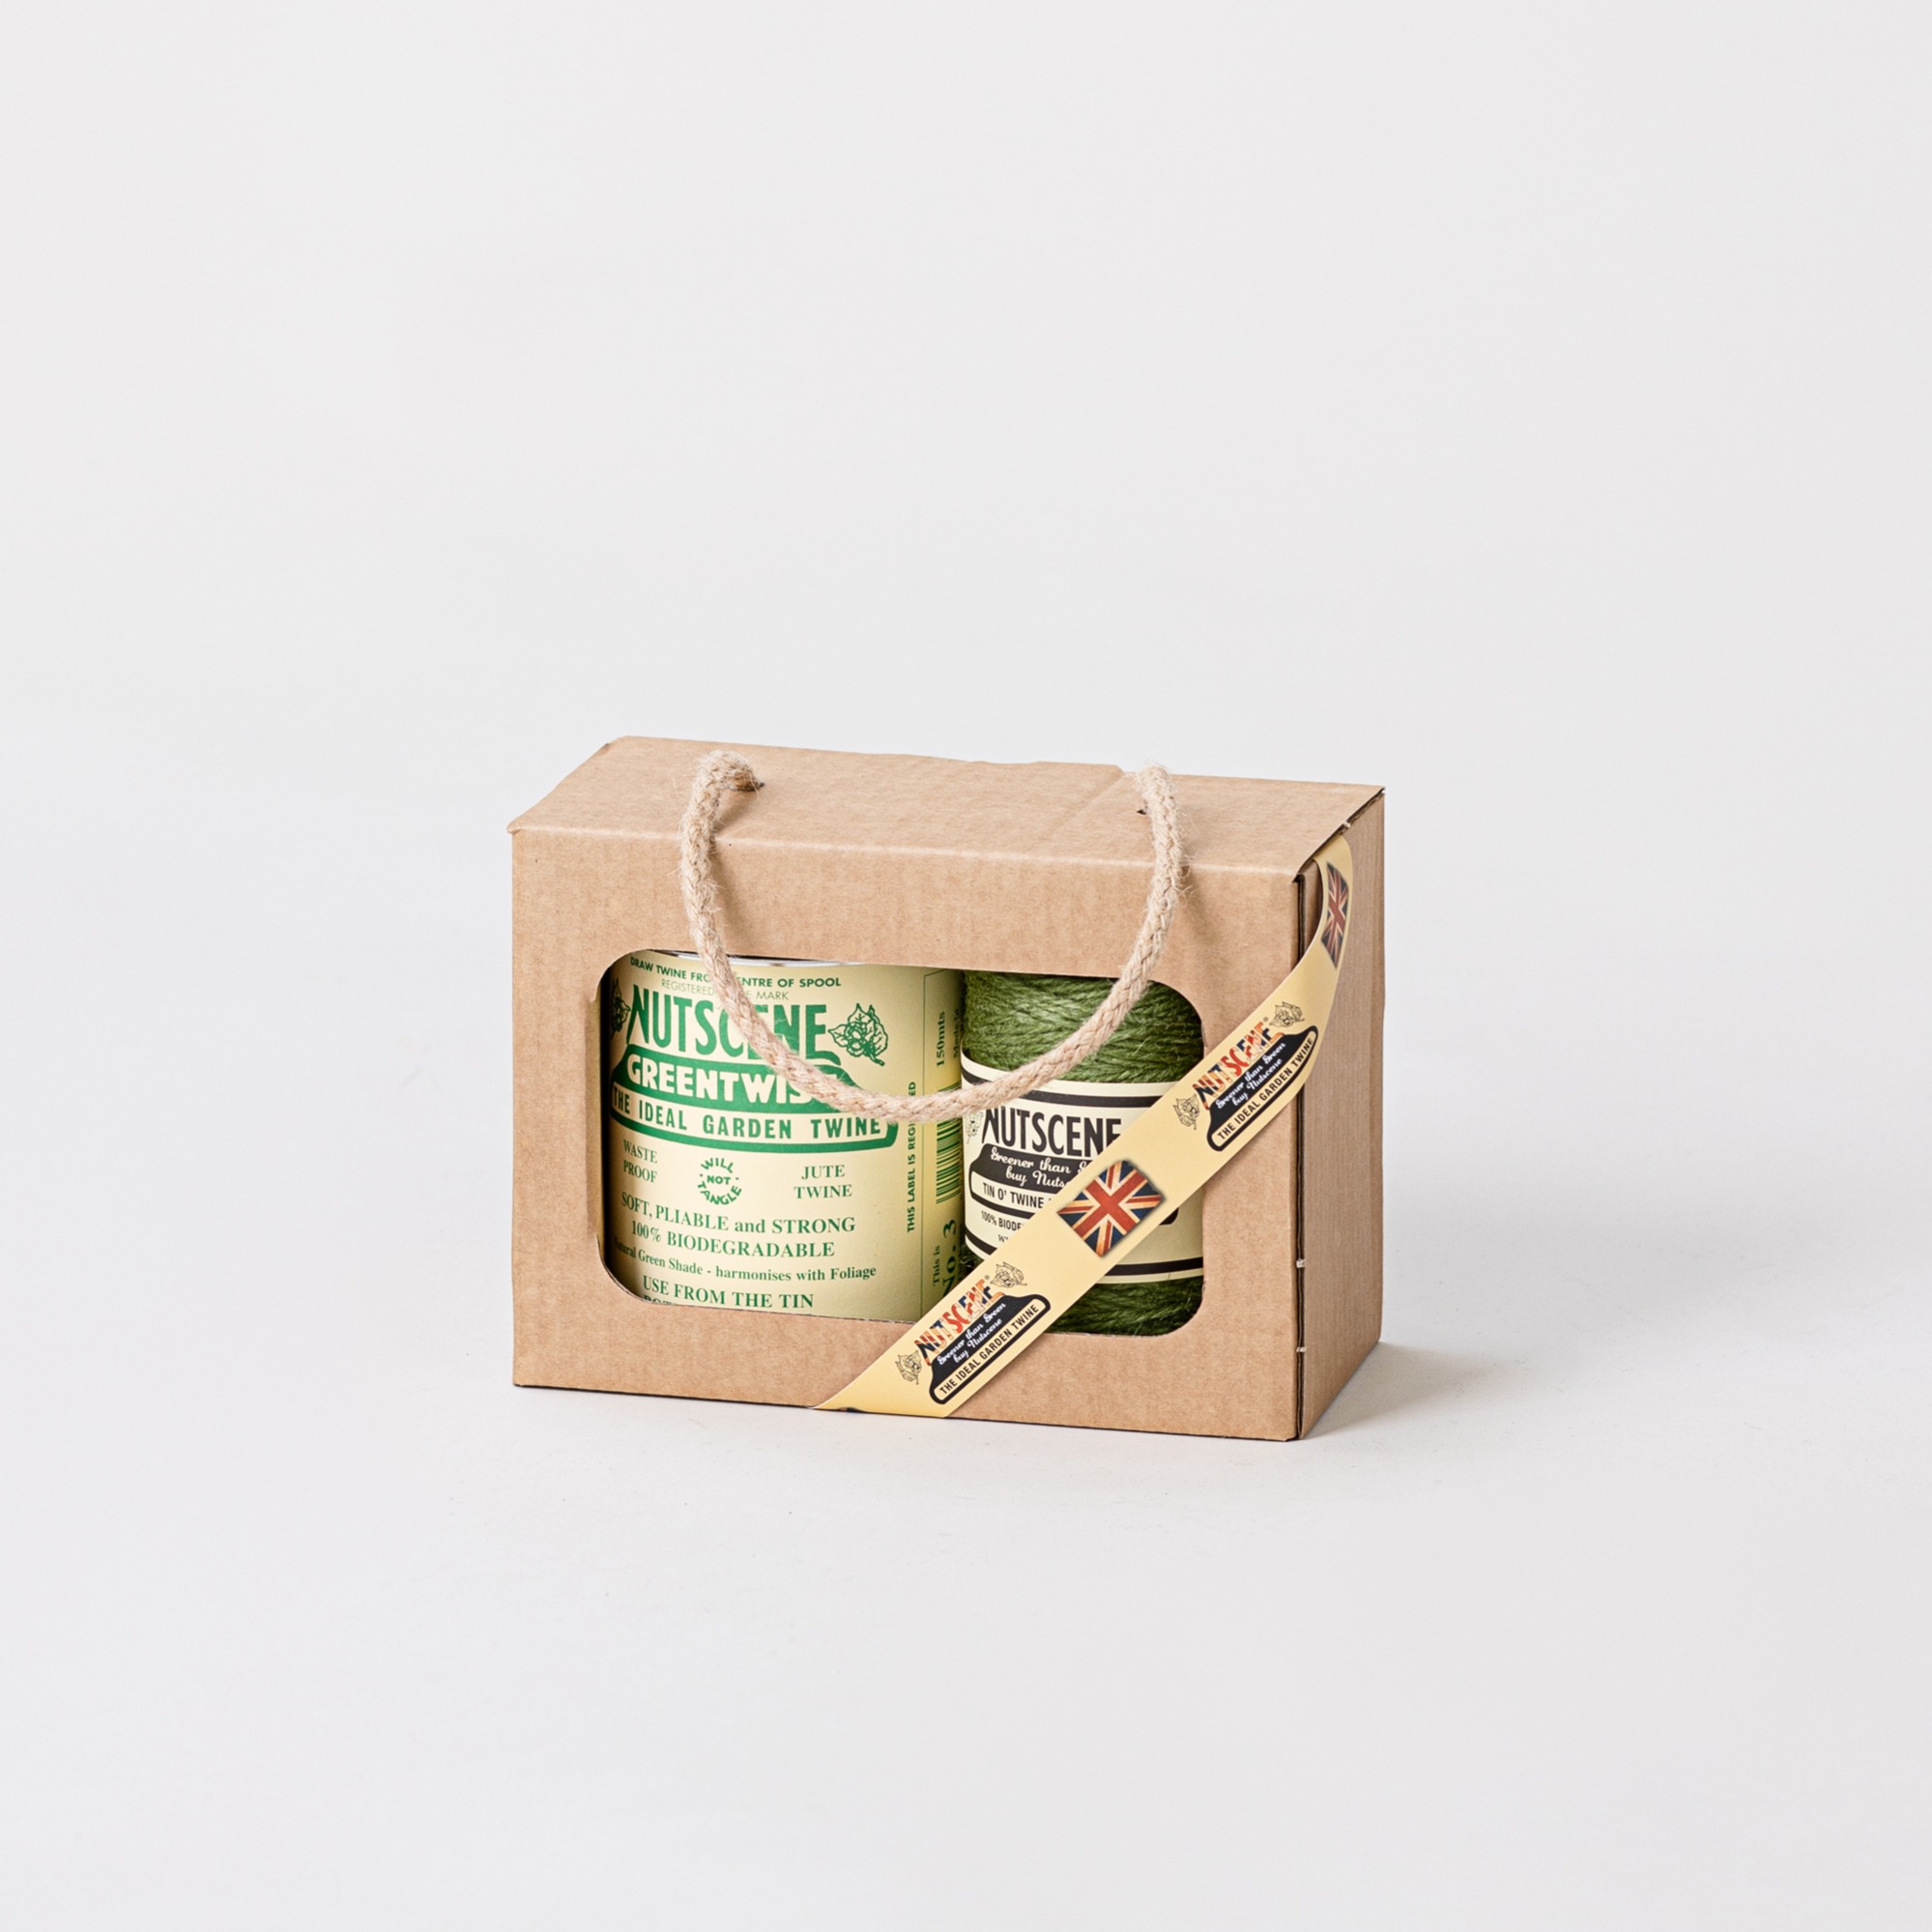 Nutscene Tin of Twine Gift Pack - Green